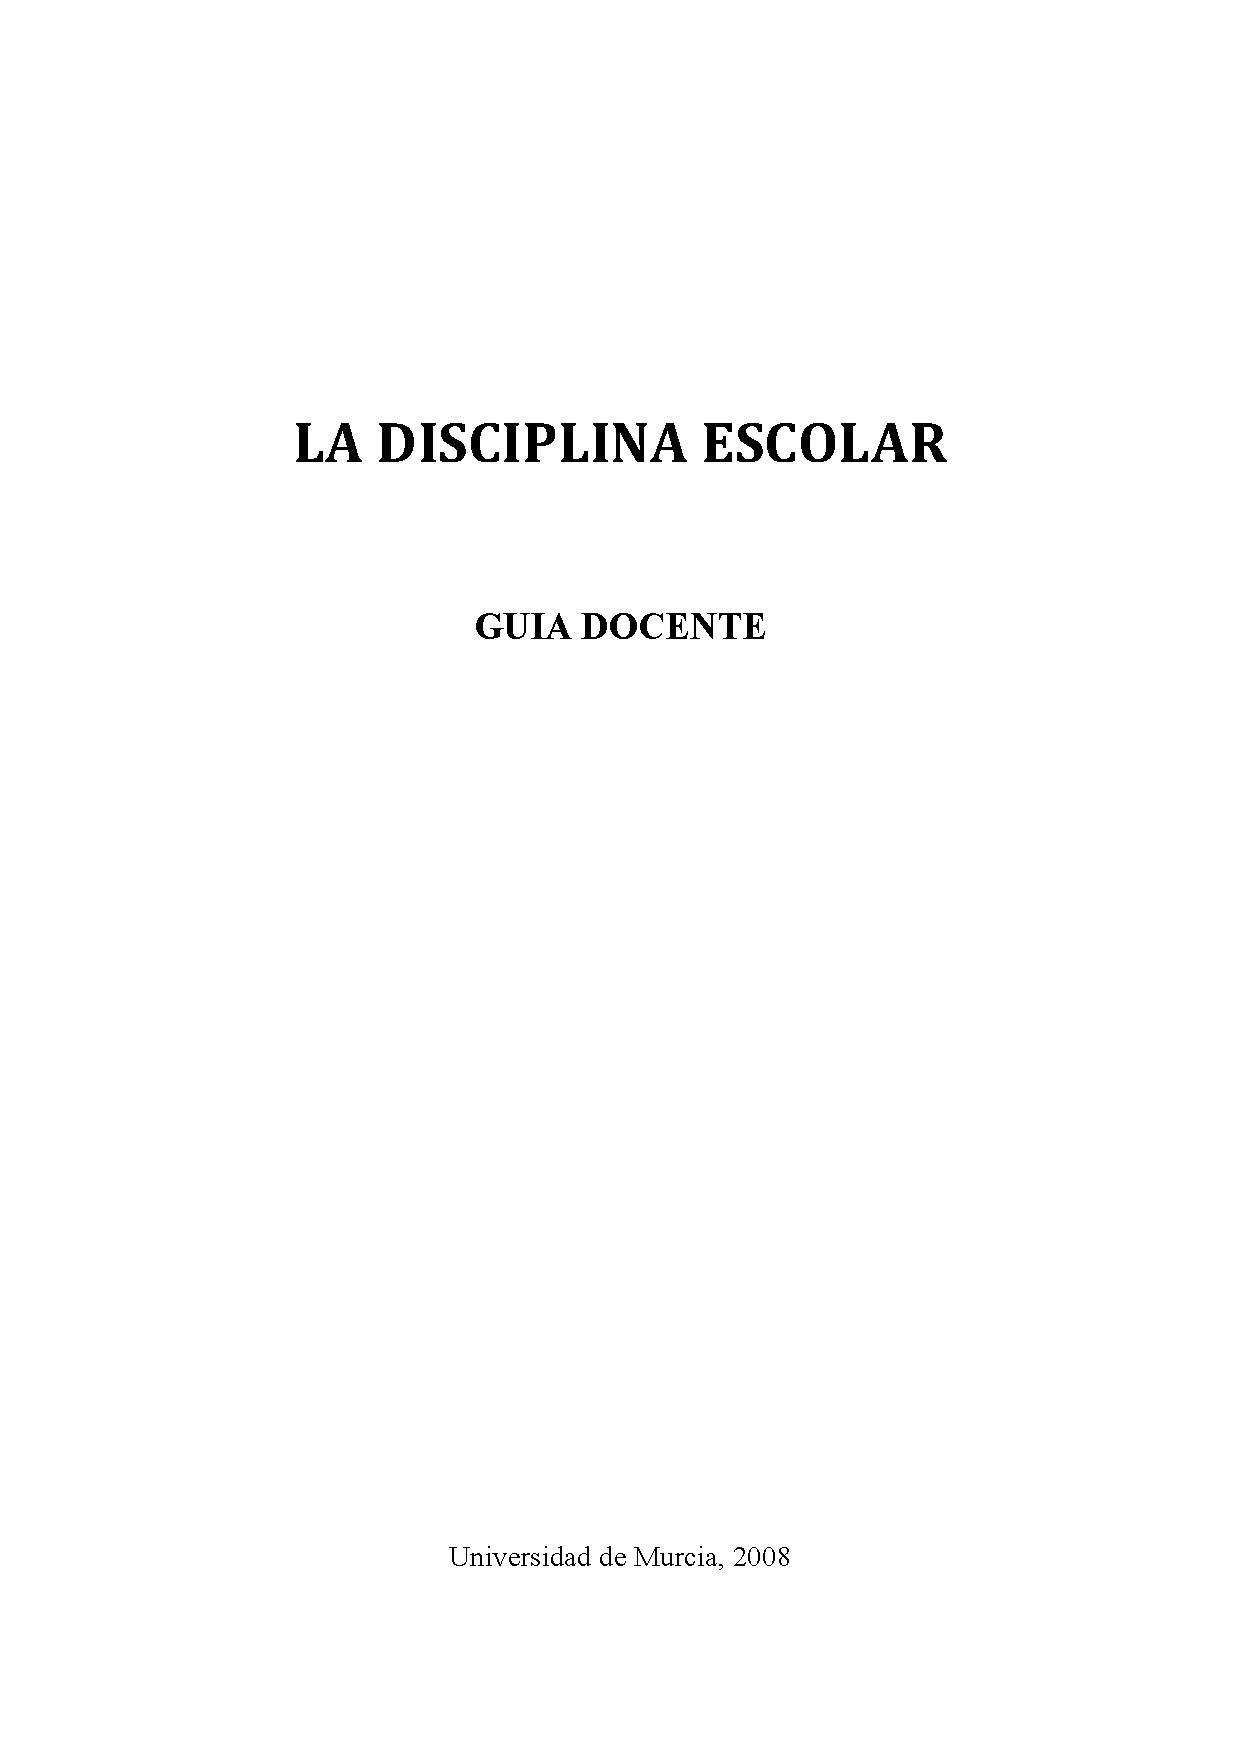 Imagen de portada del libro La Disciplina Escolar